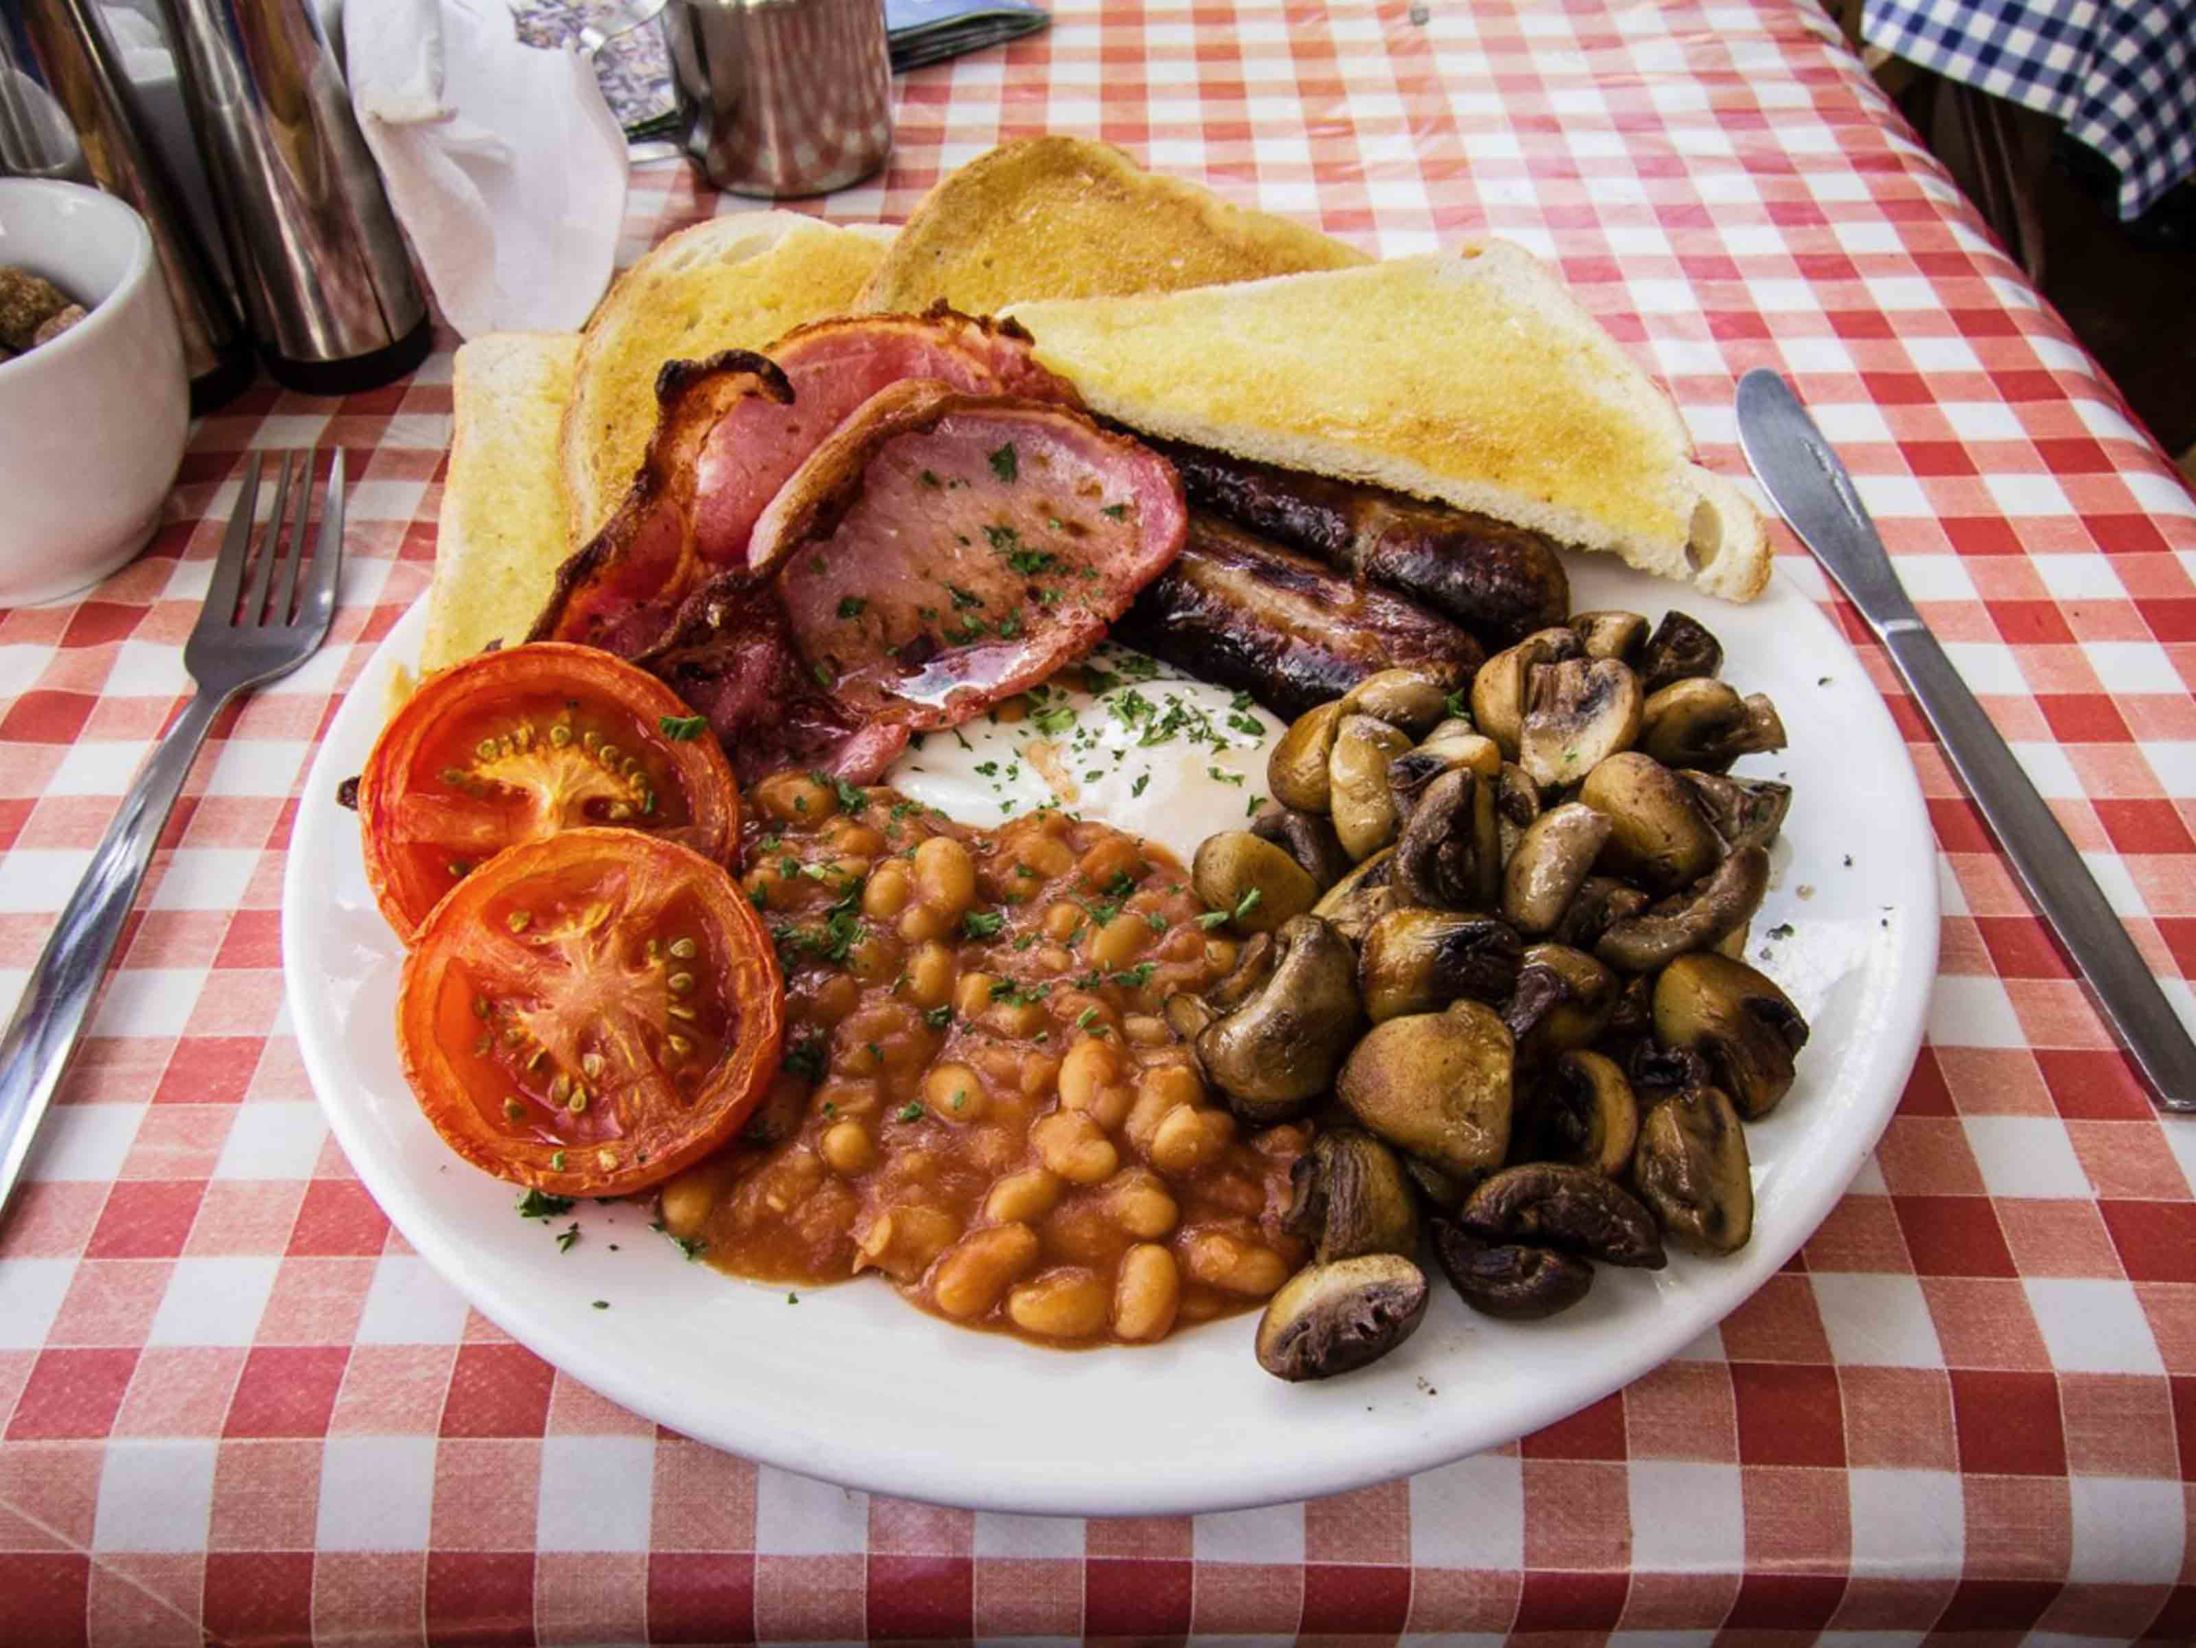 Best Breakfast in Brighton - Billie's Cafe